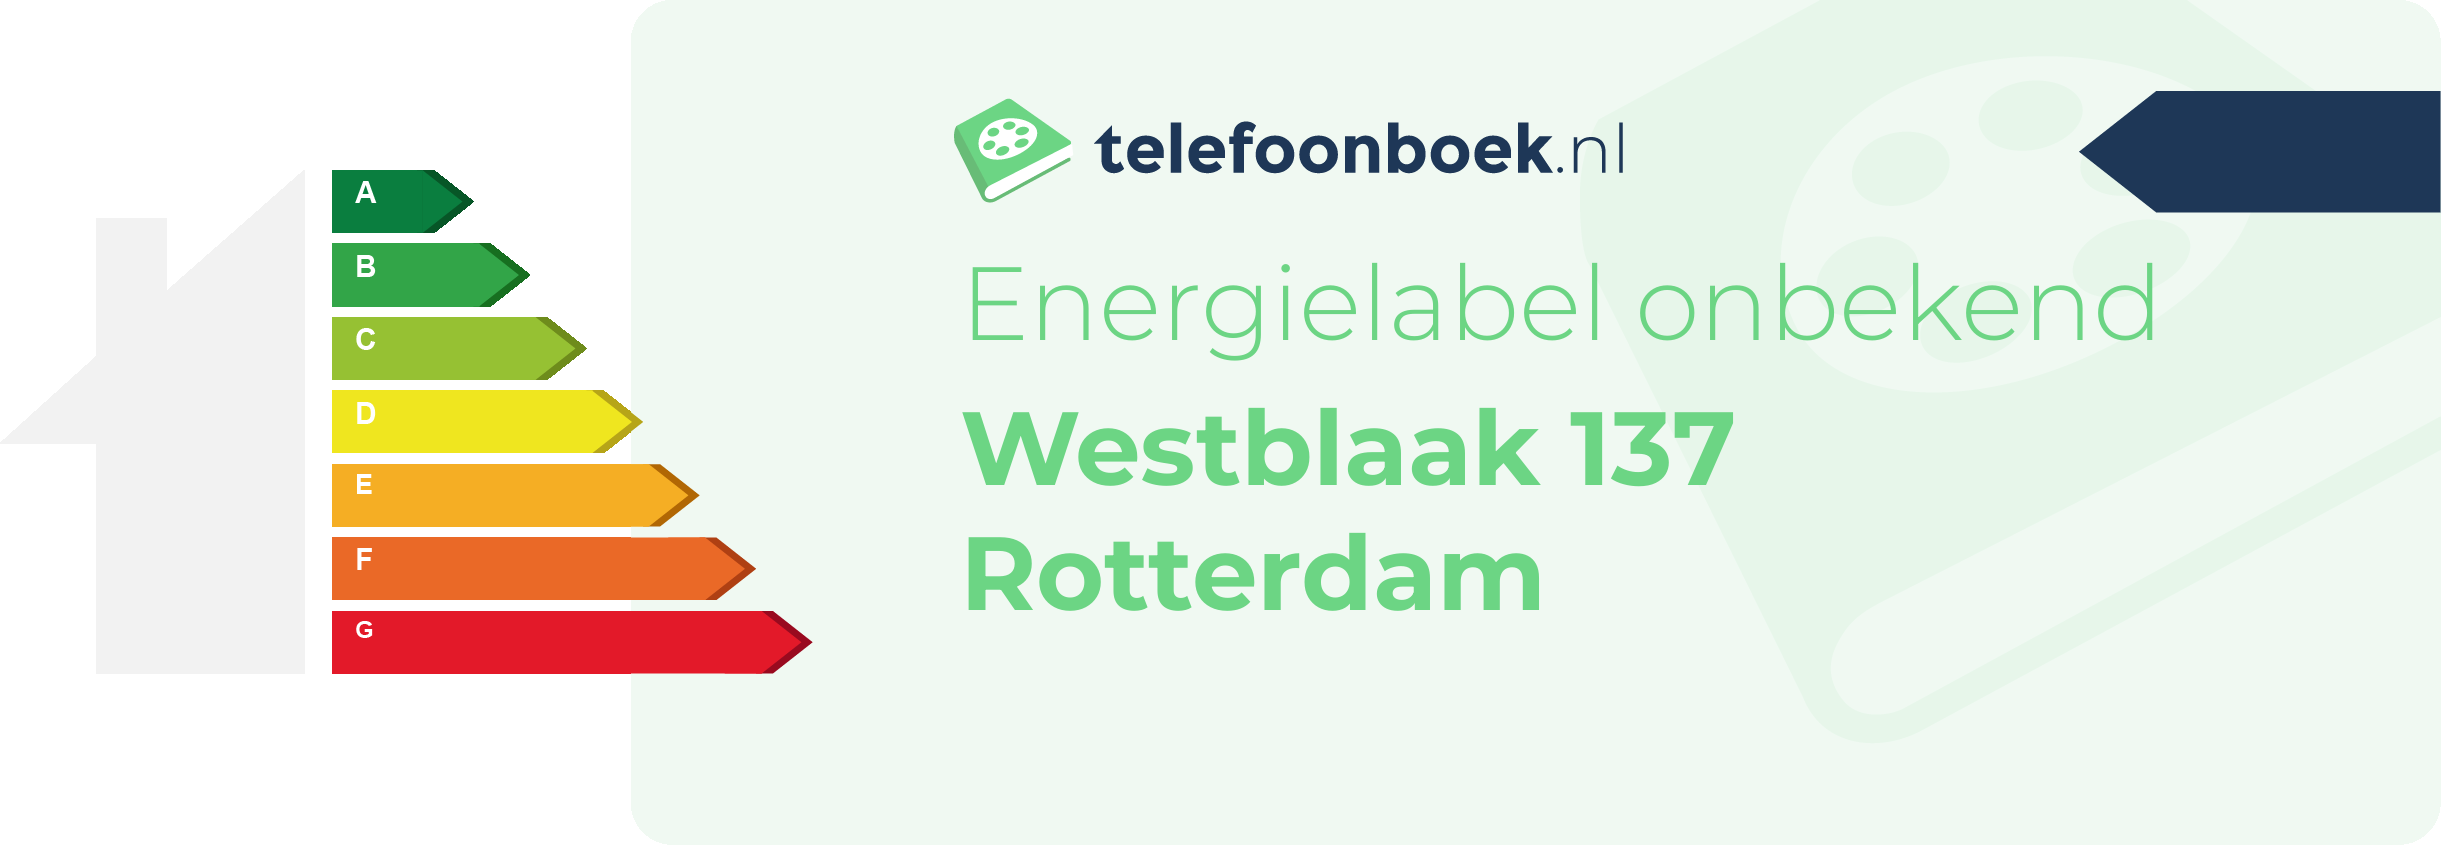 Energielabel Westblaak 137 Rotterdam